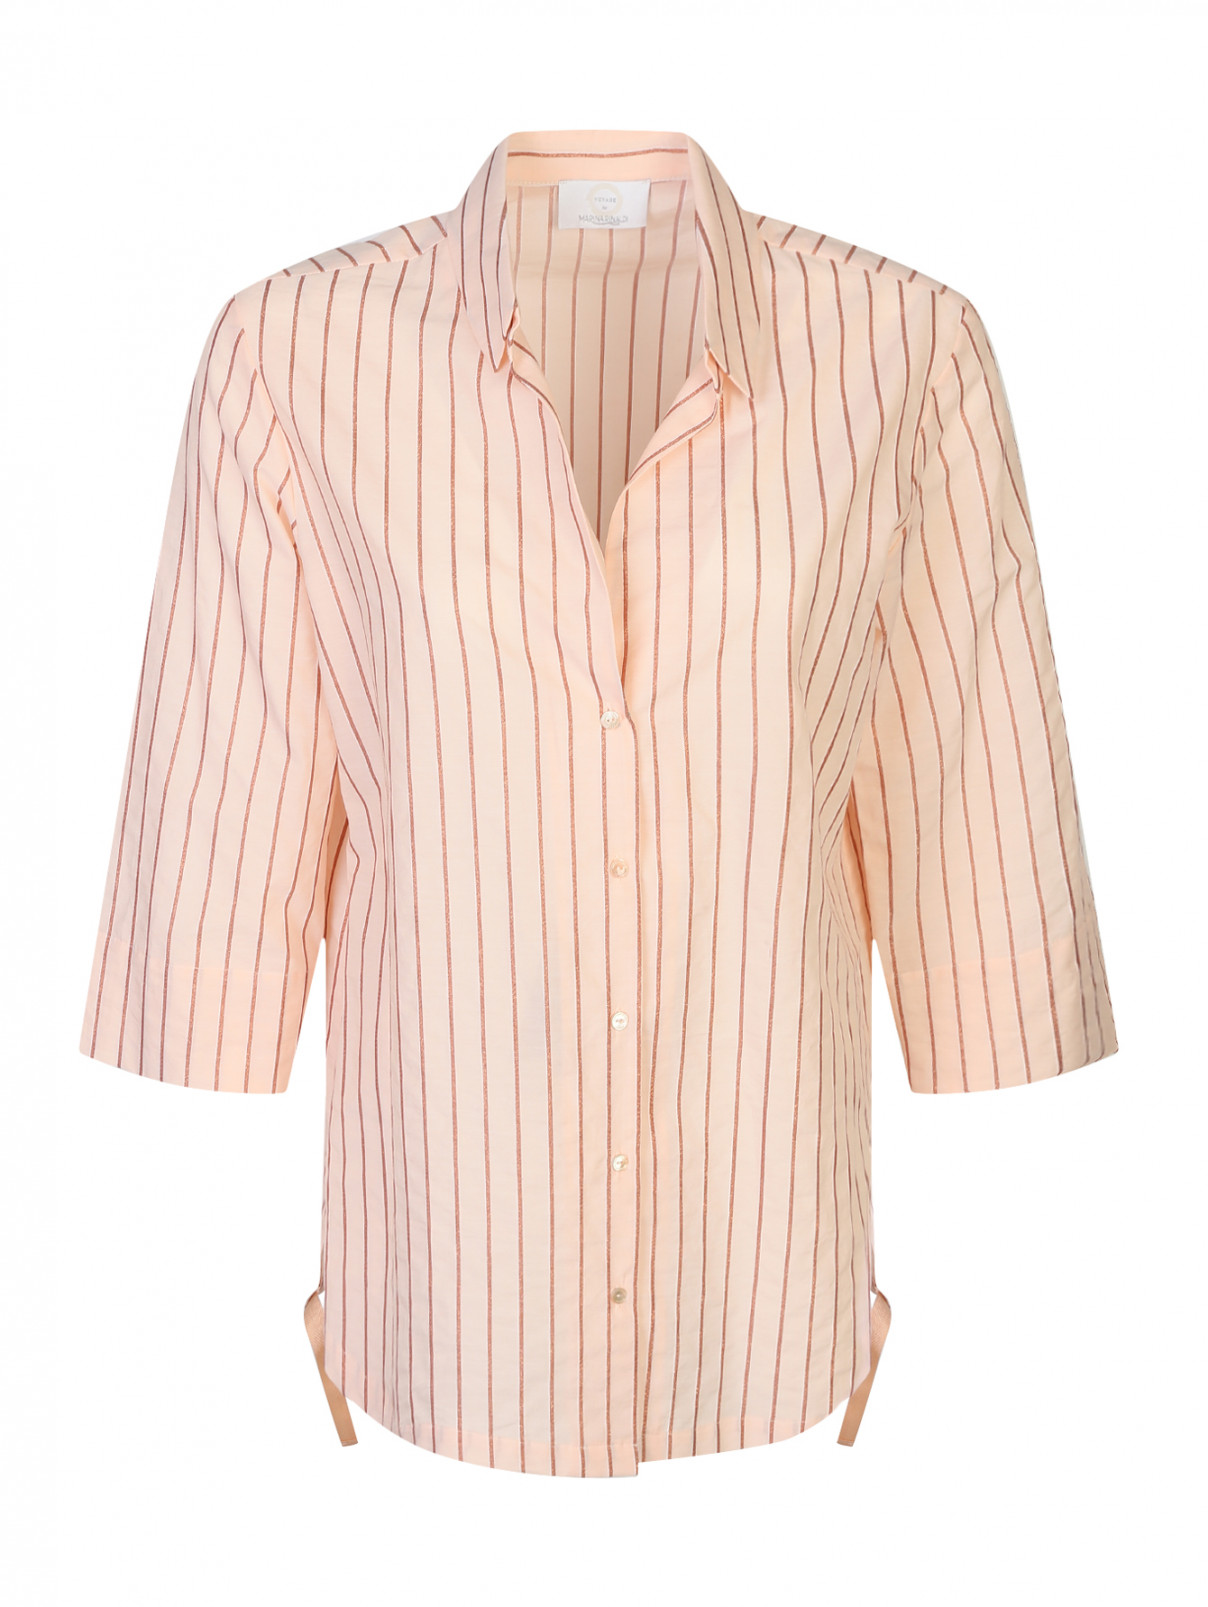 Рубашка из хлопка с узором "полоска" Marina Rinaldi  –  Общий вид  – Цвет:  Розовый